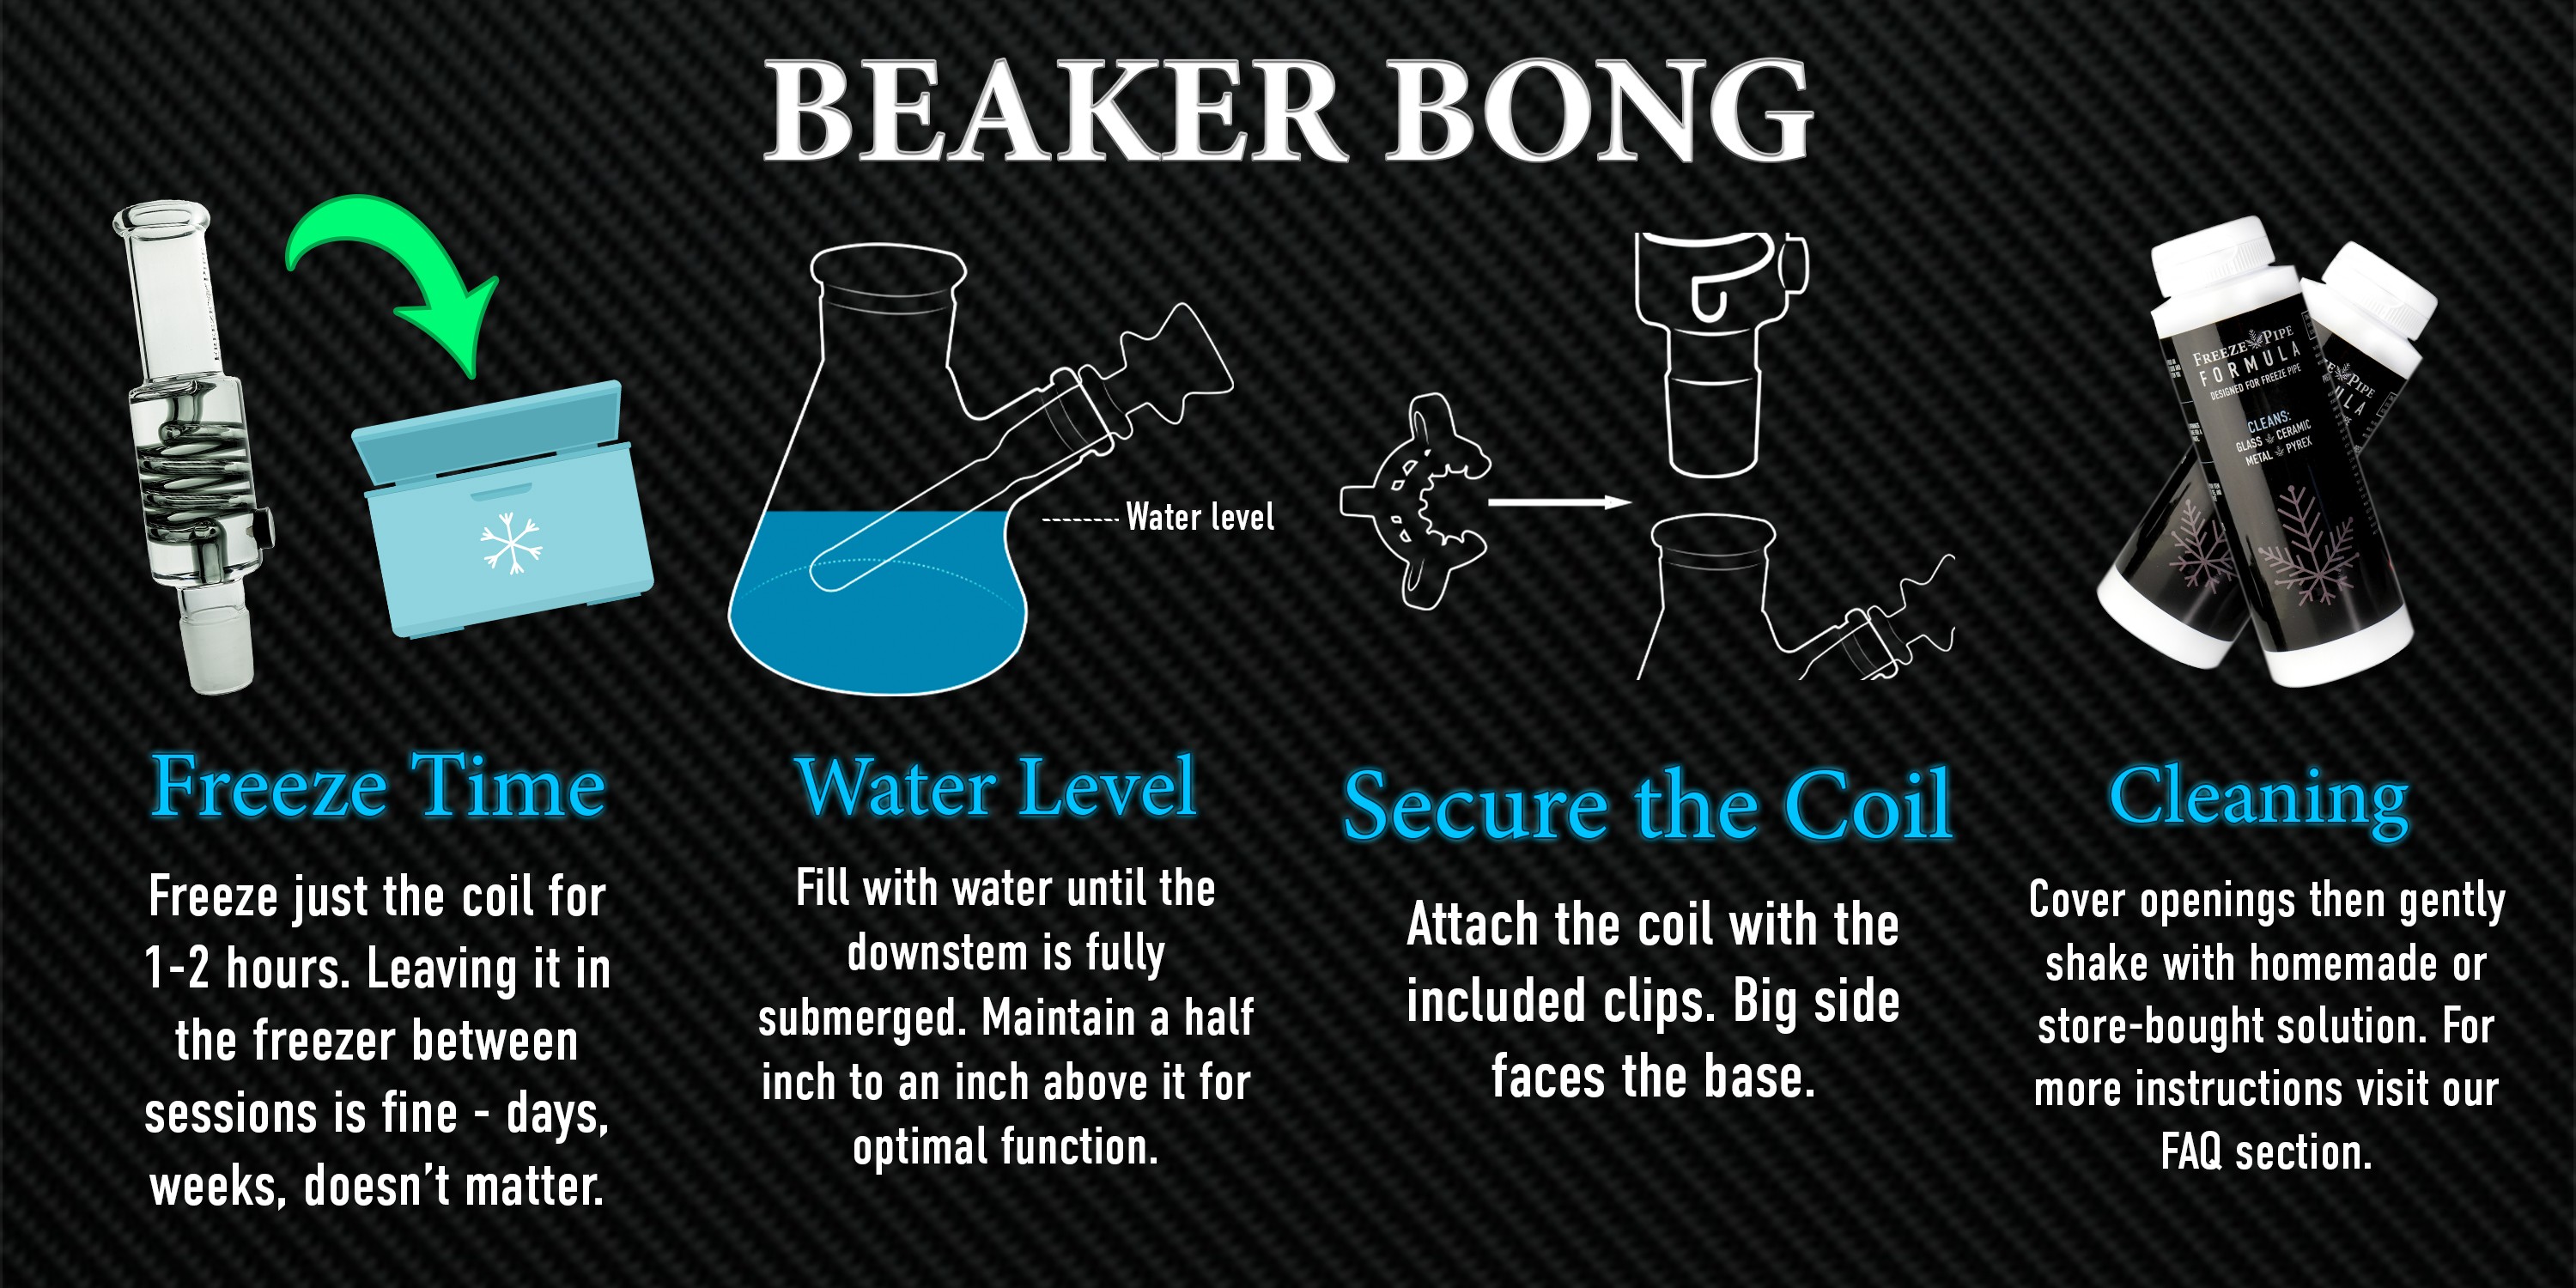 using a beaker bong